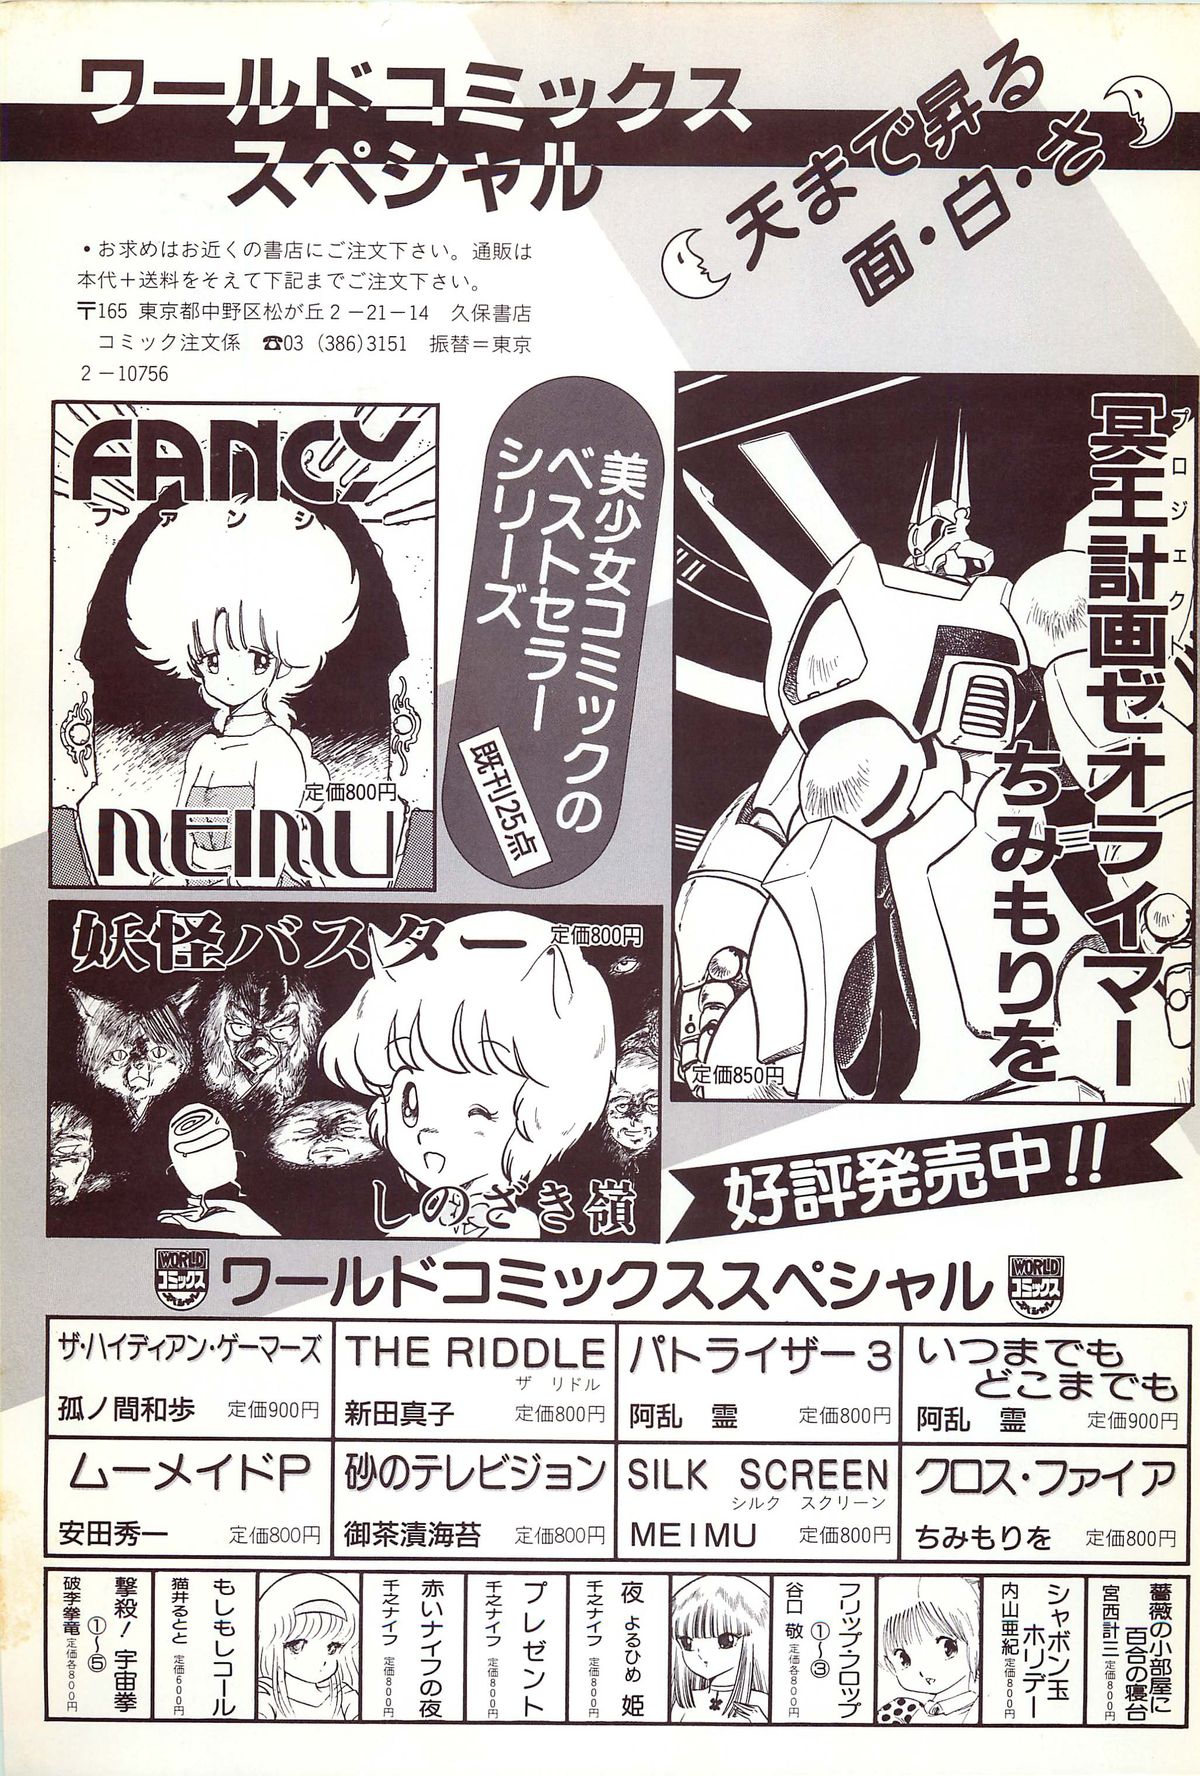 レモンピープル 1986年9月増刊号 Vol.61 オールカラー